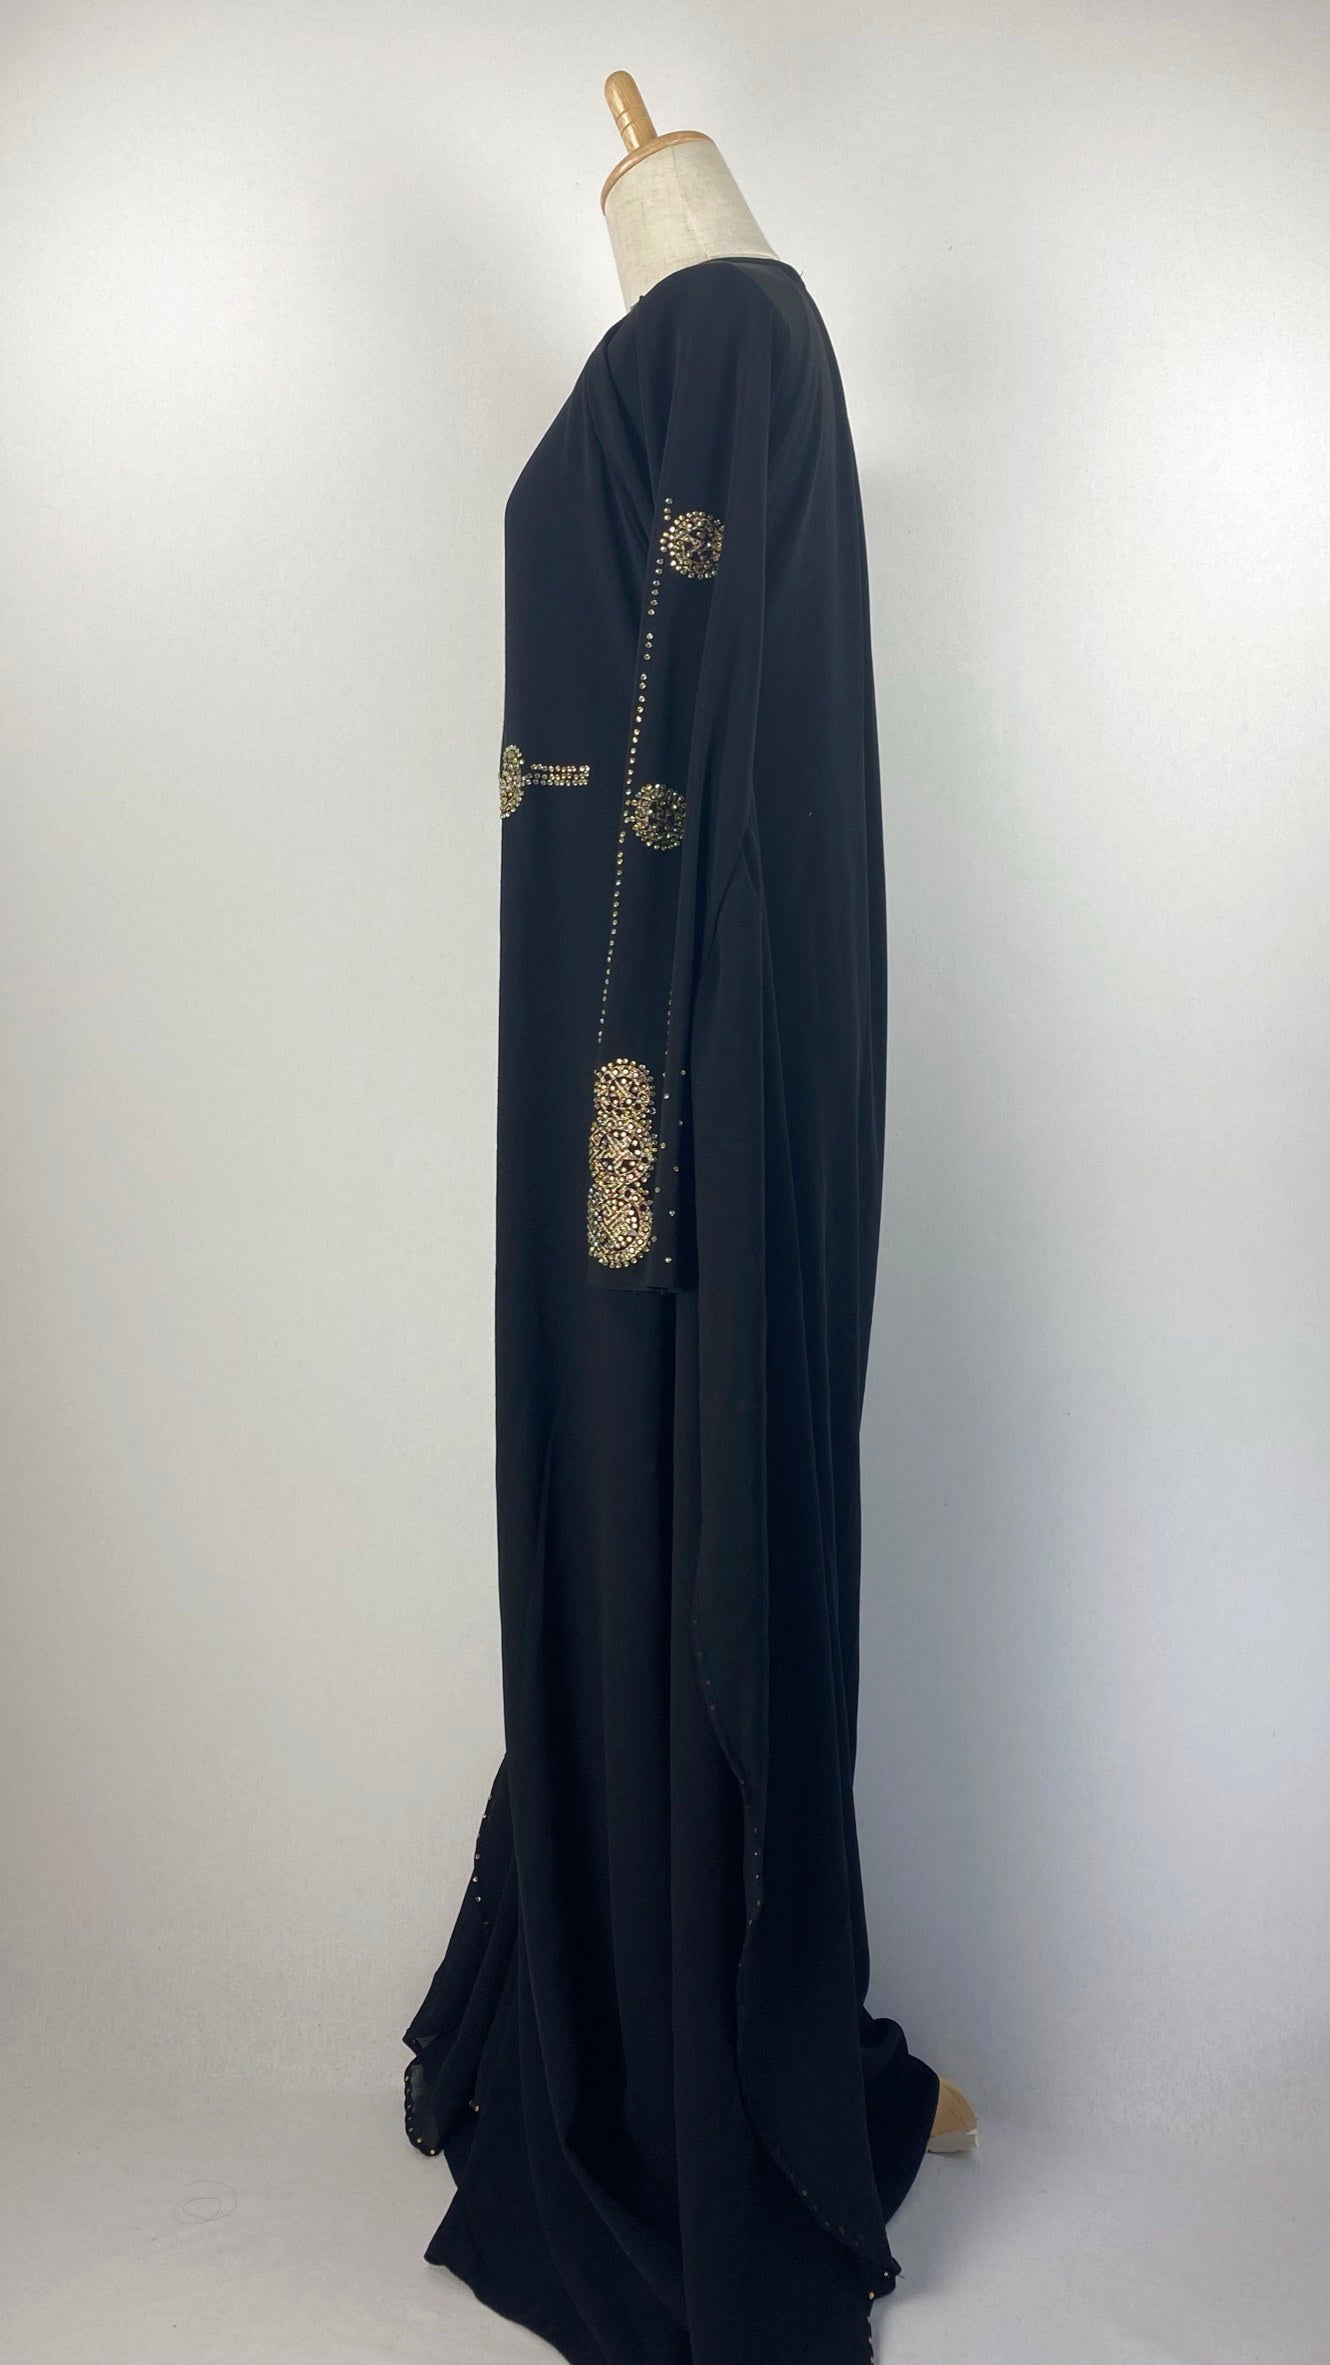 Long Sleeve Batwing Closed Abaya, Black and Gold